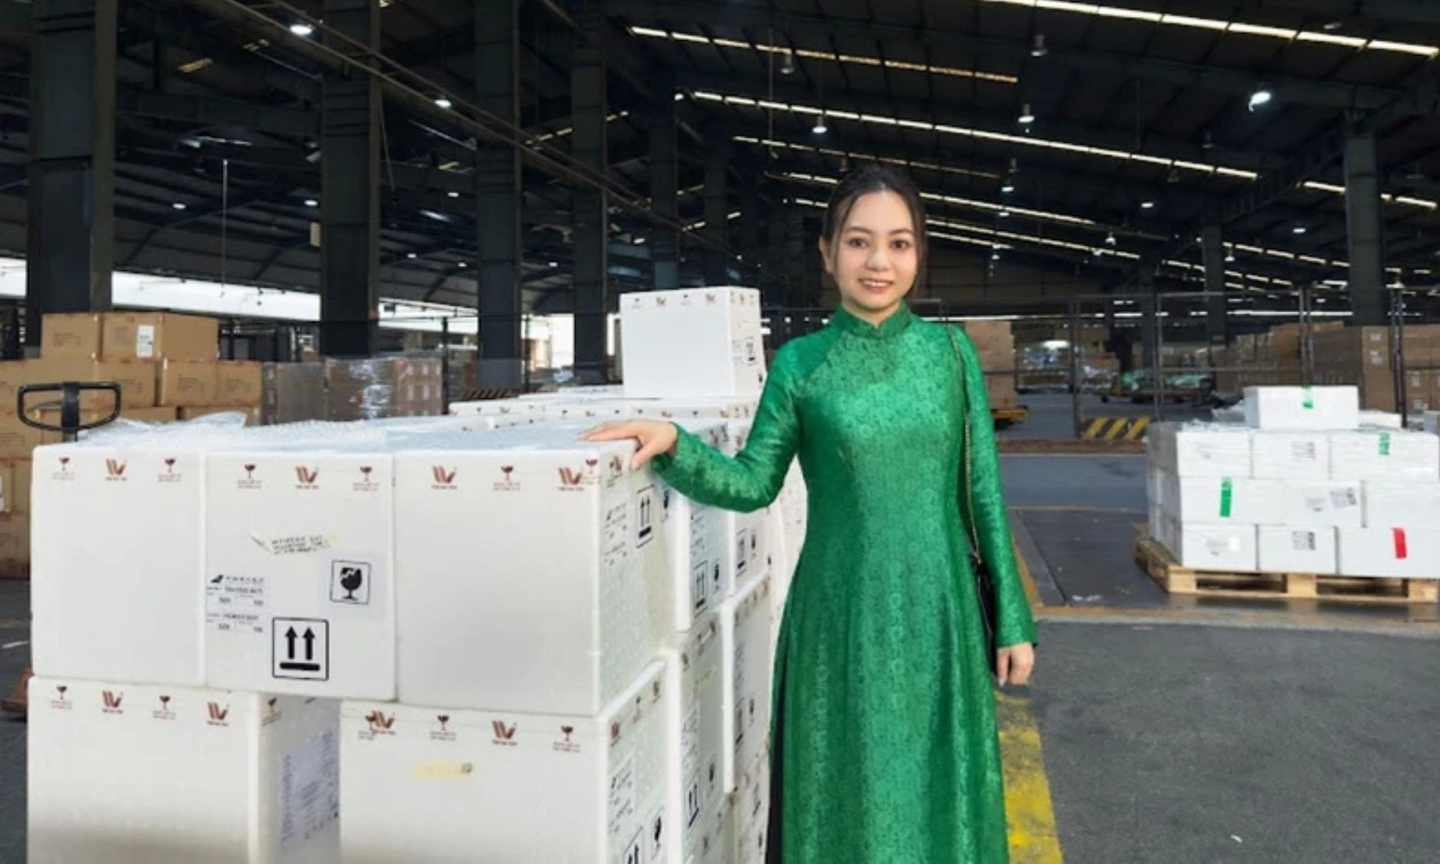 Bà Trần Thanh Hải, CEO Công ty Hải Yến Nha Trang cho biết: “The Hải Yến chọn đường hàng không để vận chuyển xuất khẩu yến sào với mong muốn bảo đảm chất lượng sản phẩm ở mức tối ưu nhất.